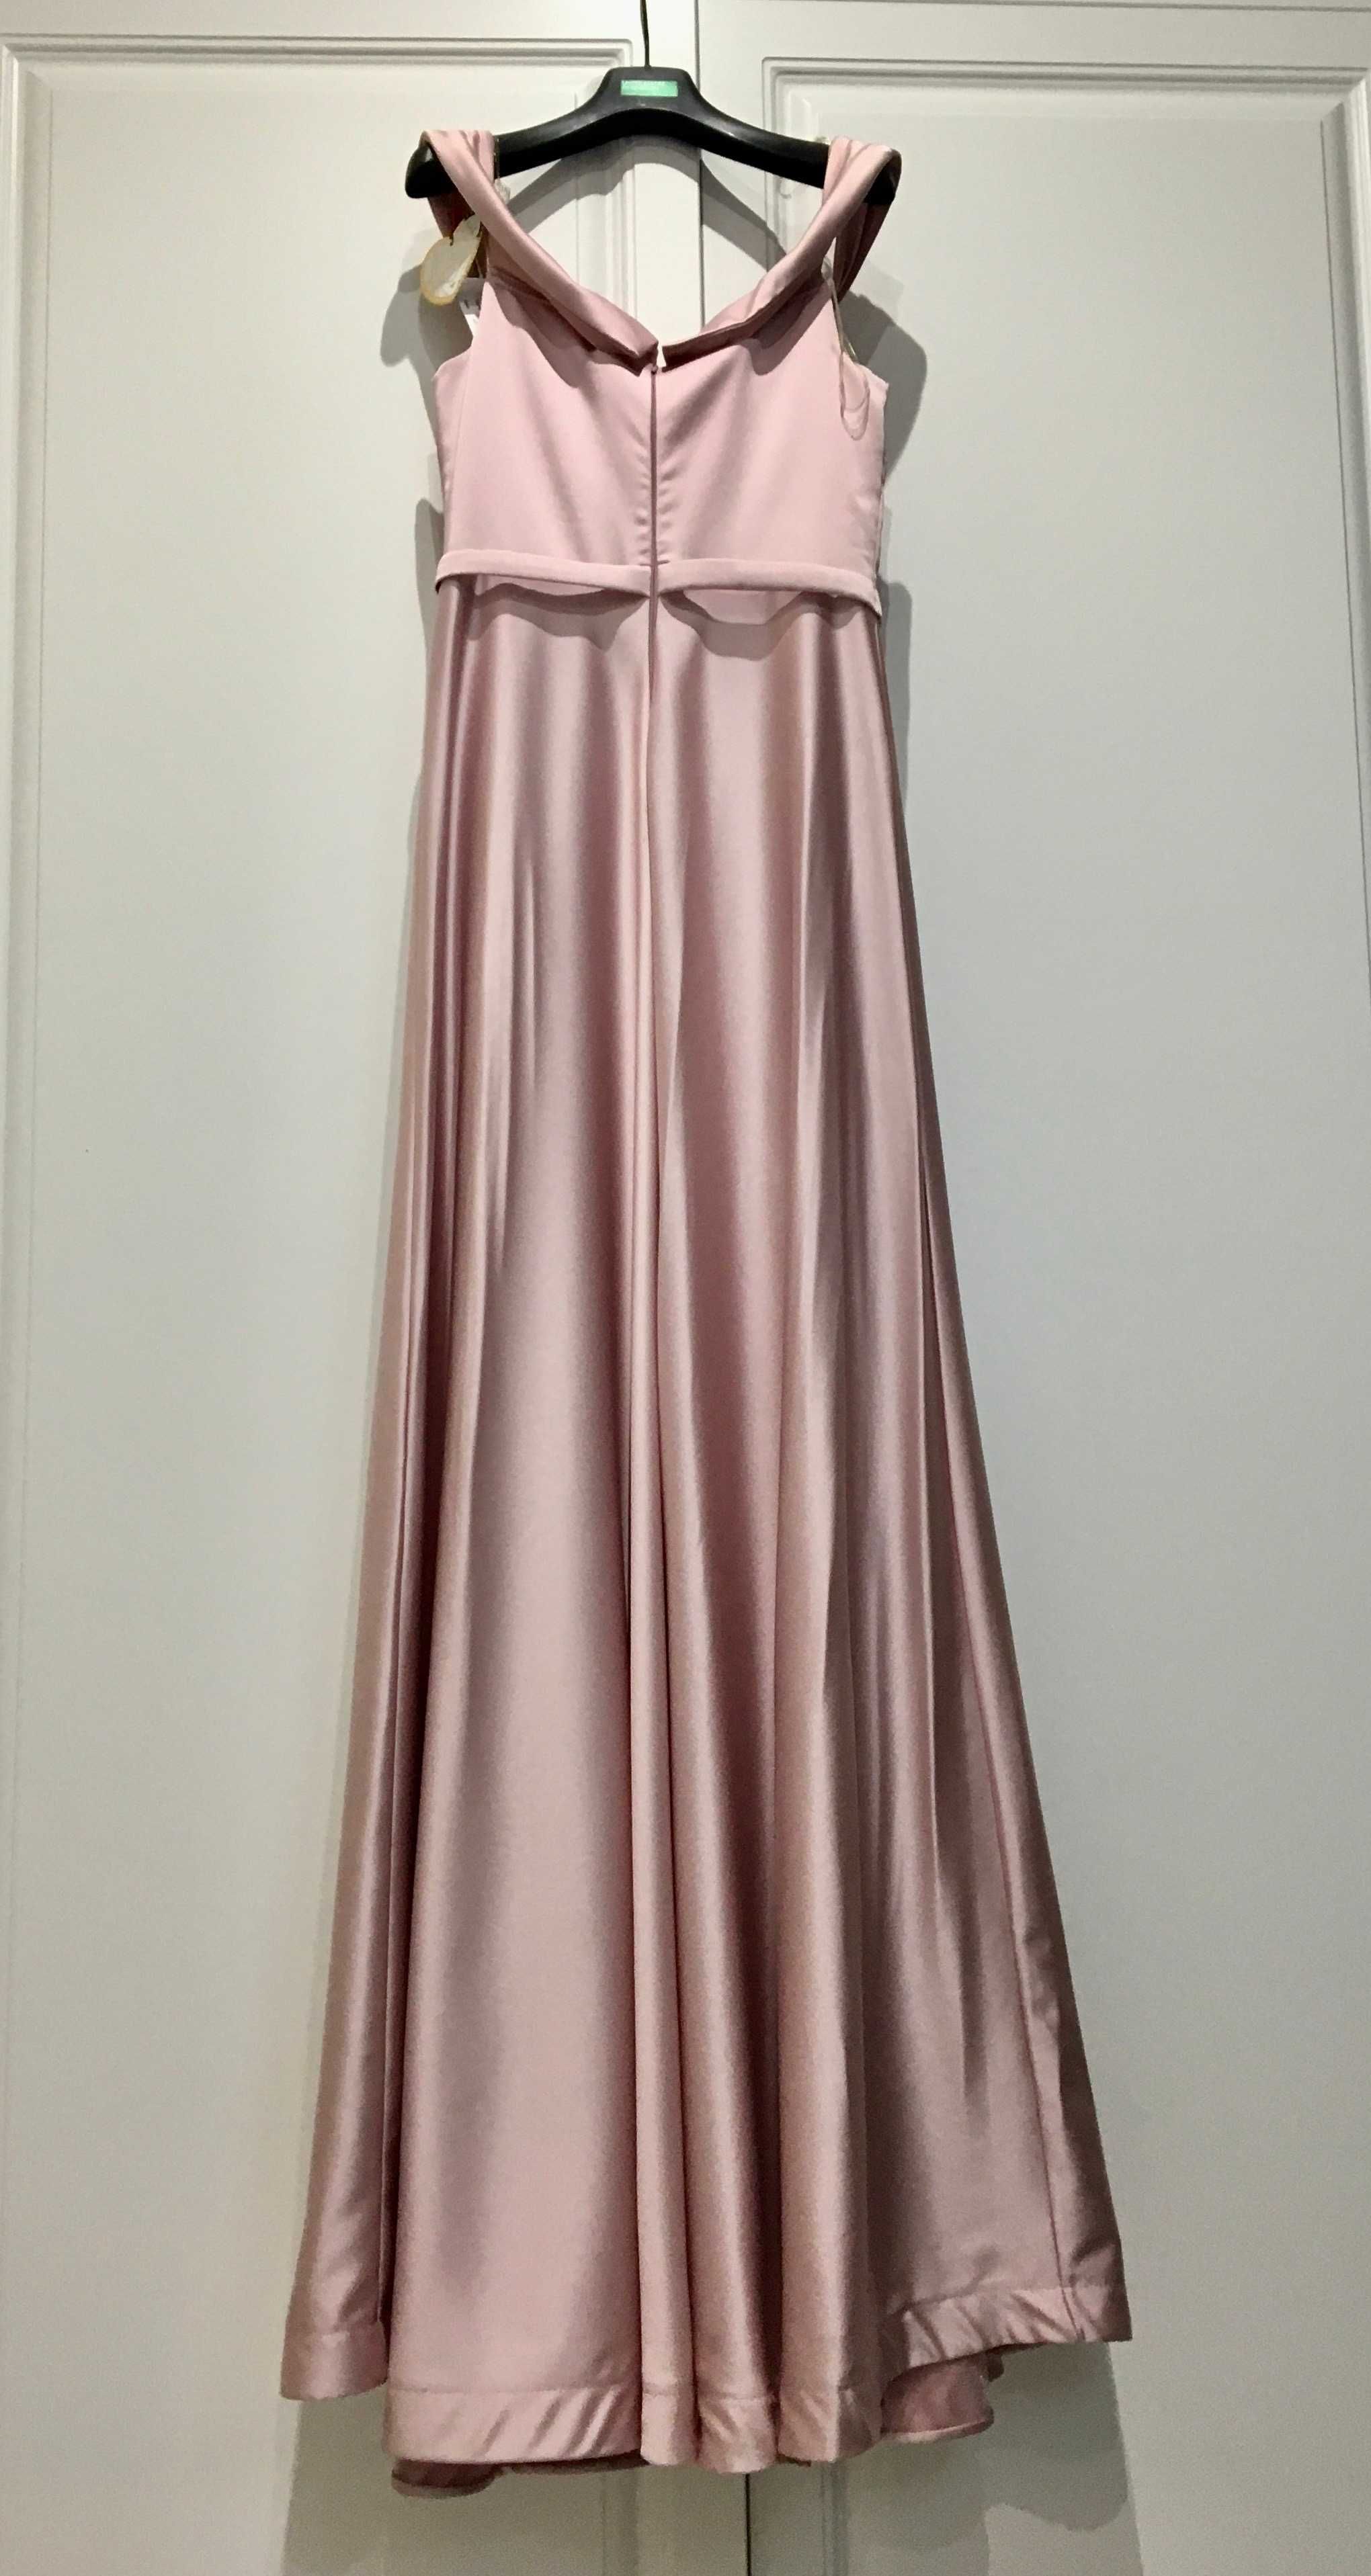 Вечернее платье фирмы "La Donatella" модель"Ale Sofi" р XS